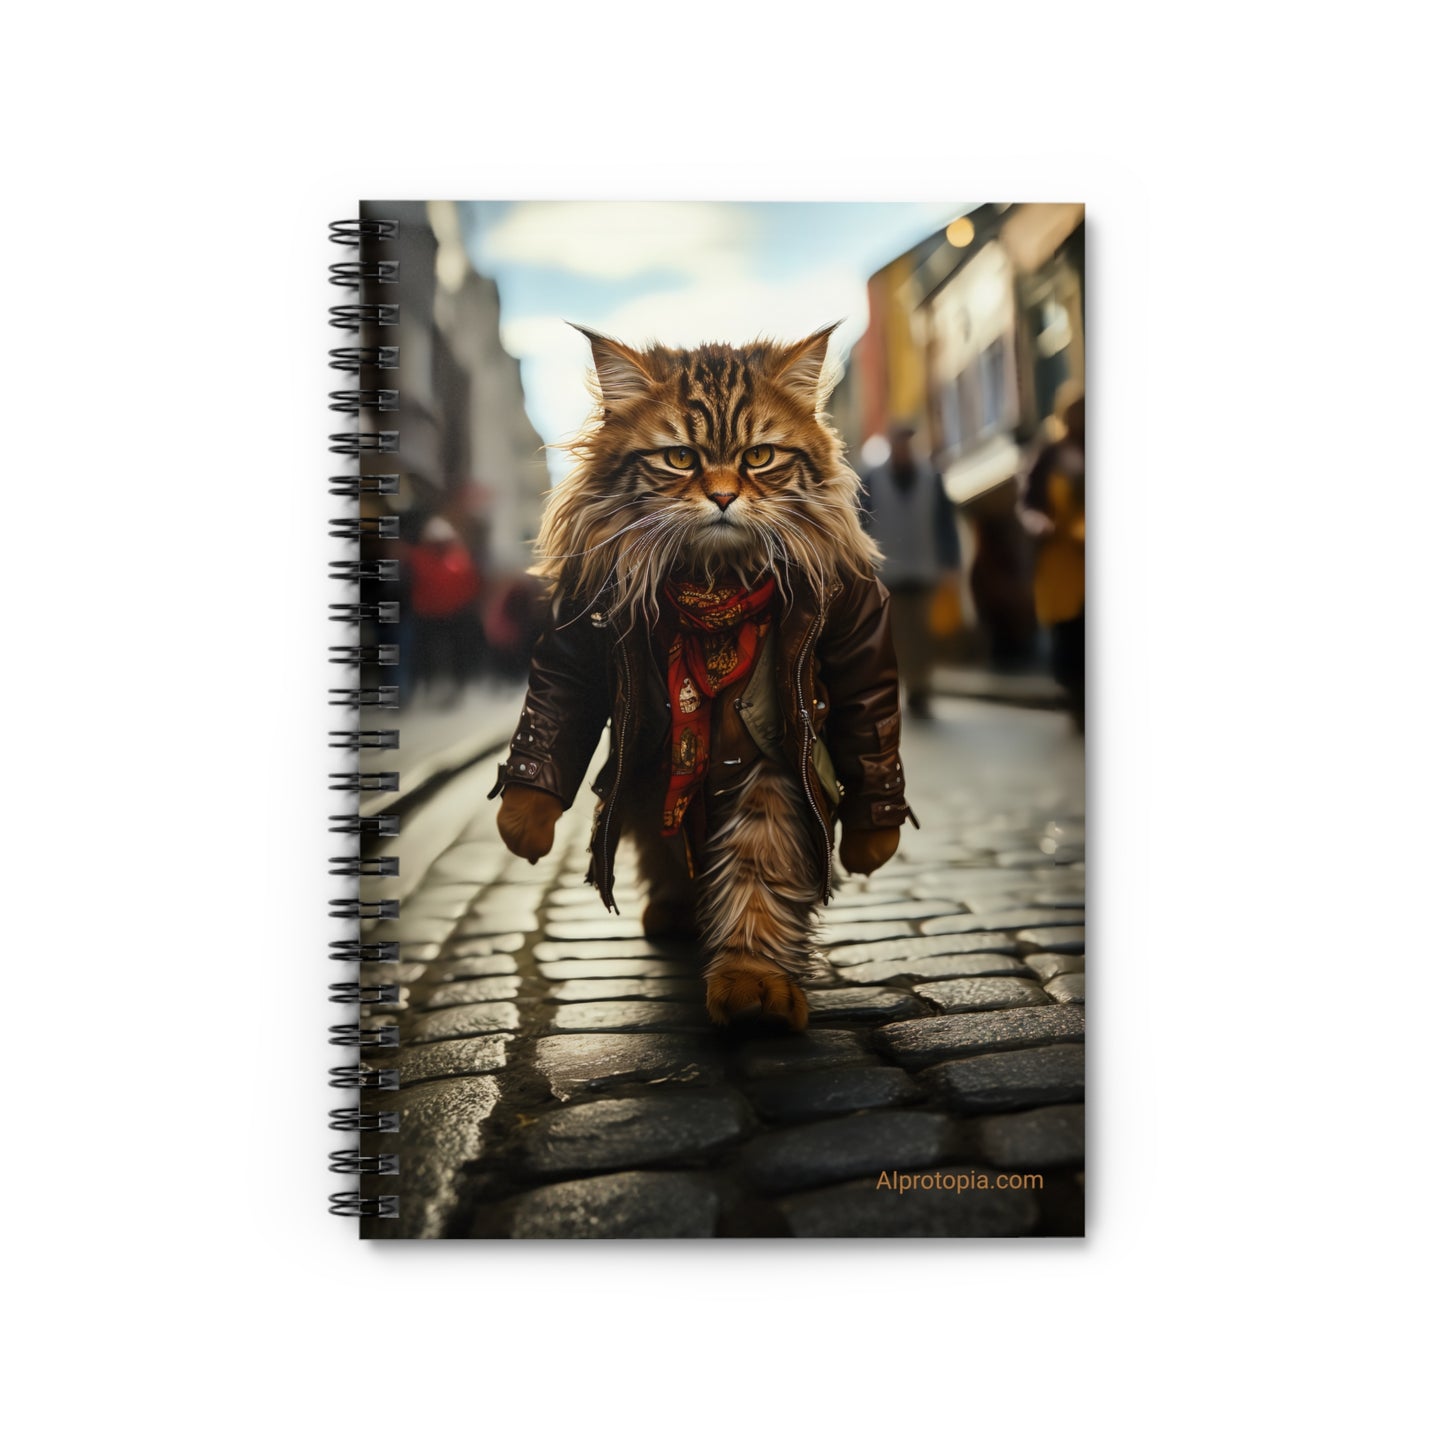 Spiral Notebook - Ruled Line. Hippy Cat. Cats. AI art.